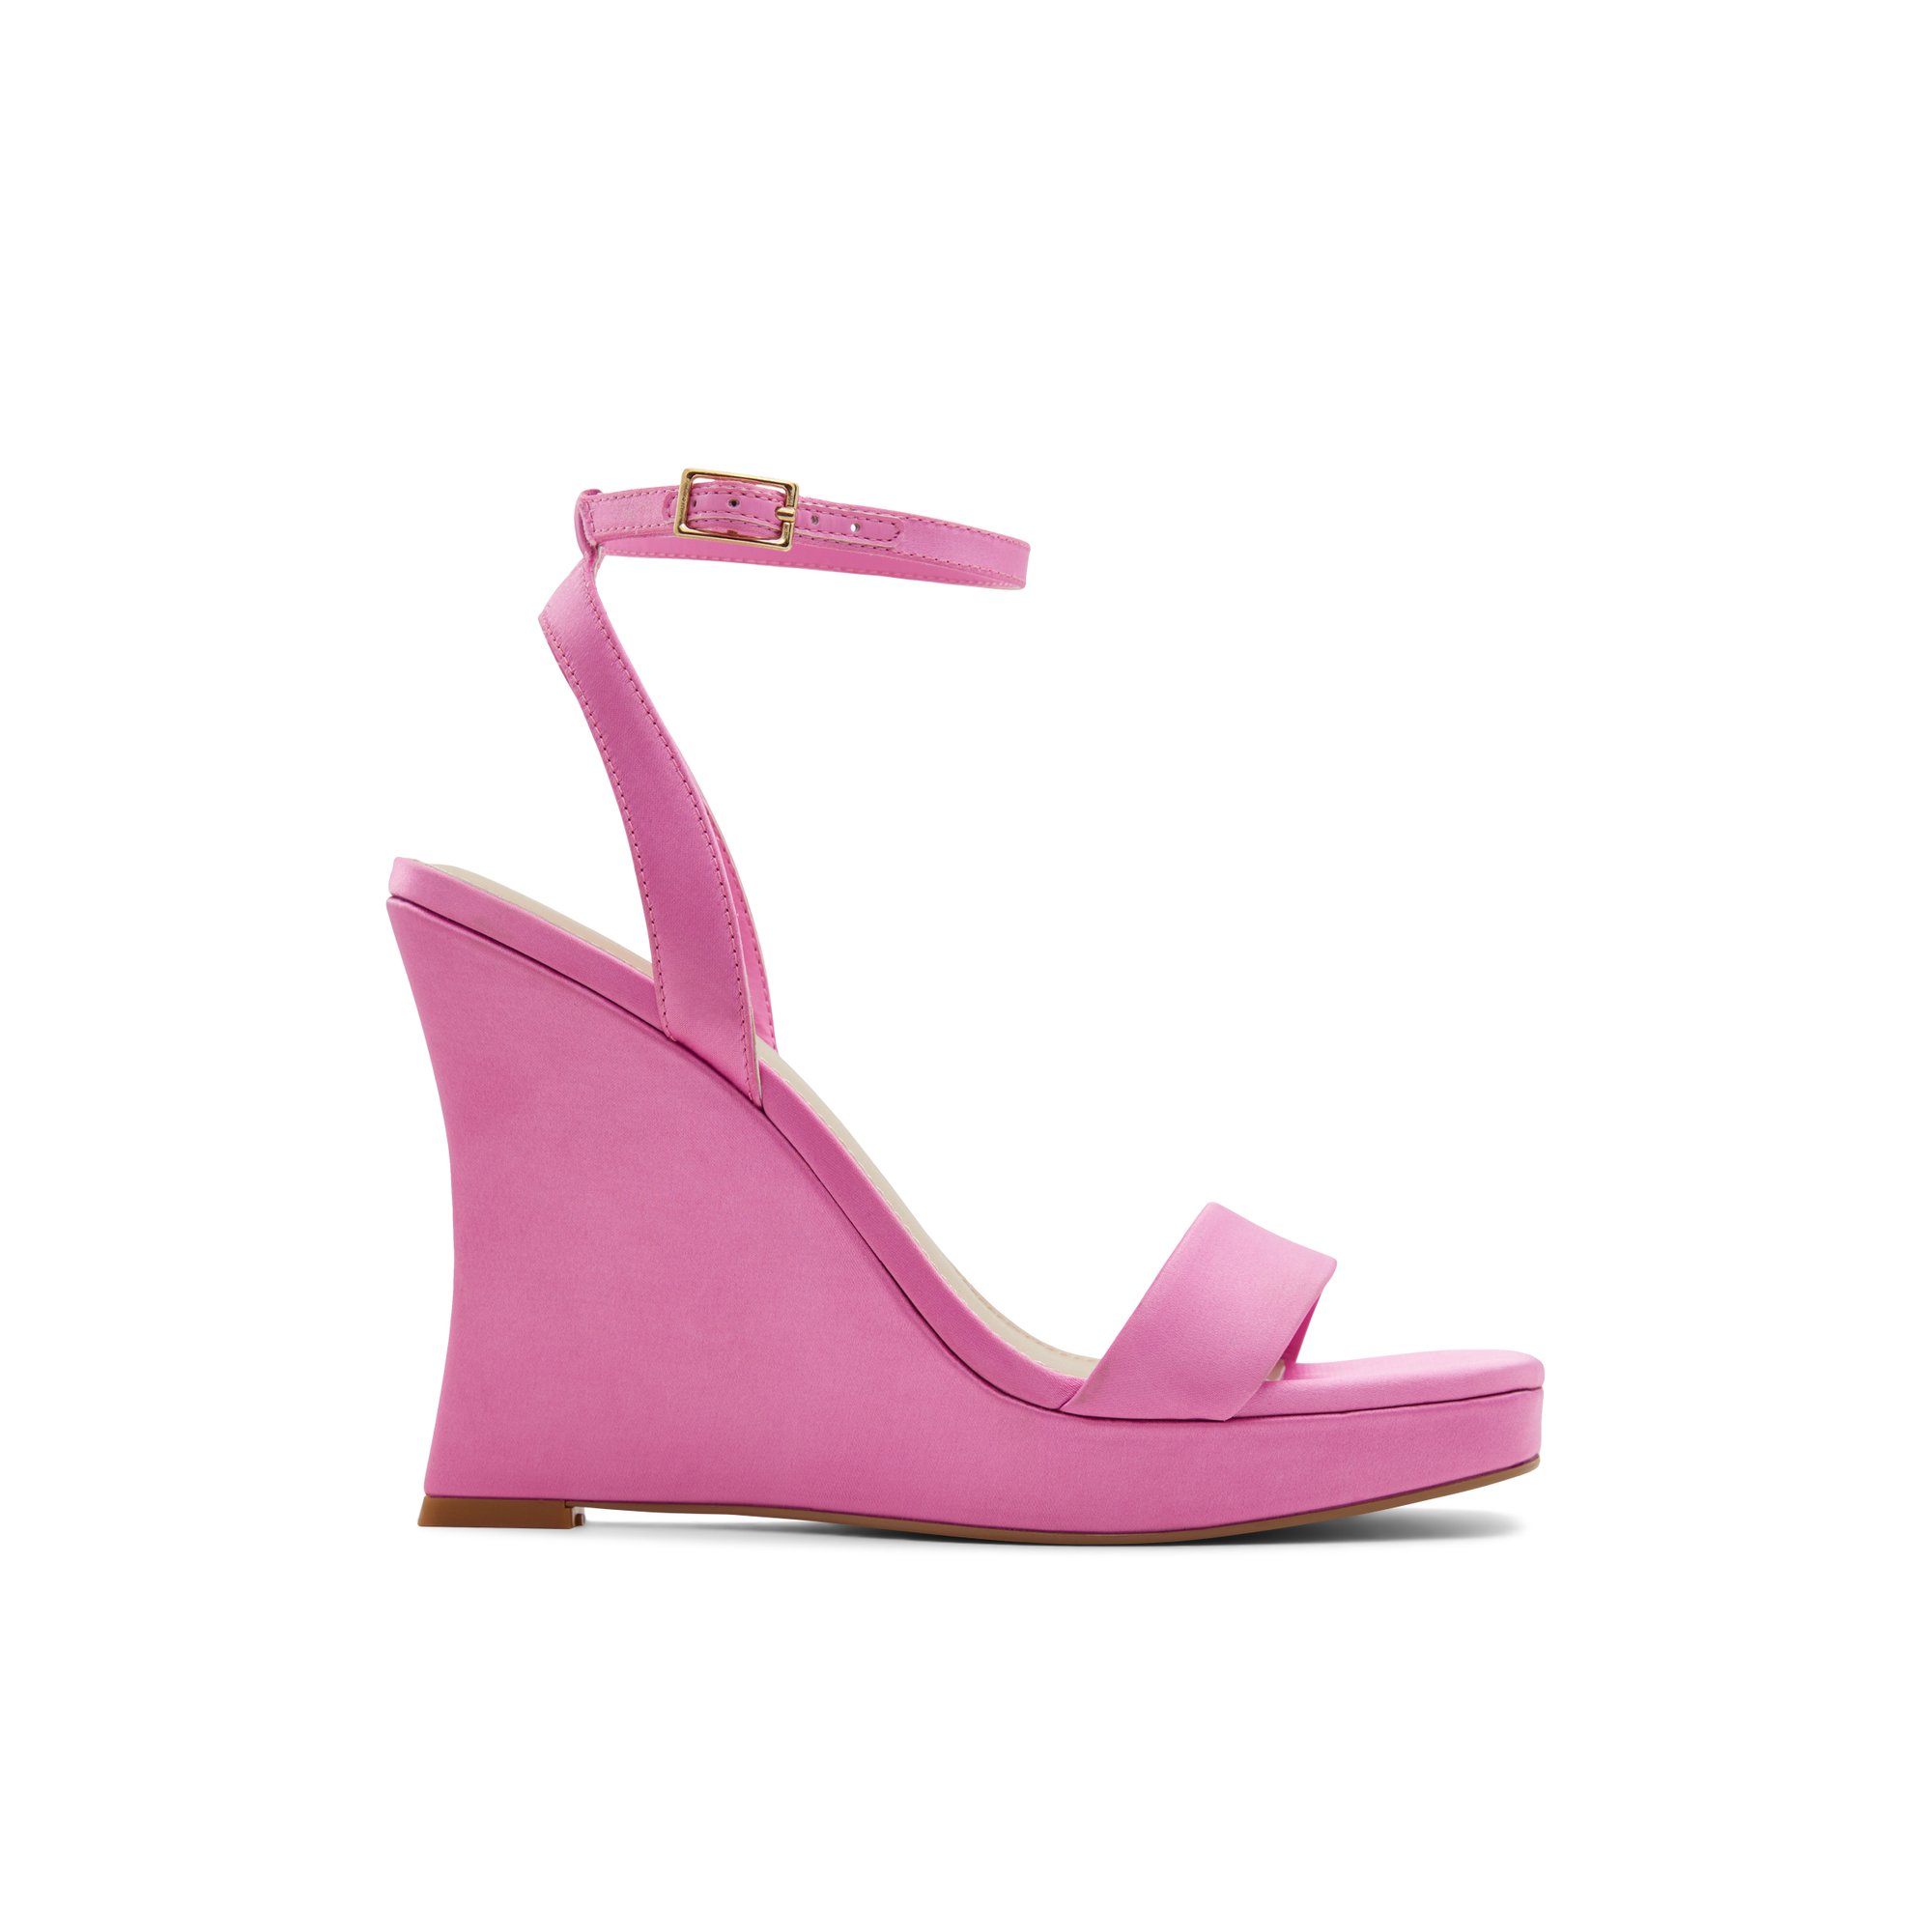 ALDO Nuala - Women's Sandals Wedges - Pink